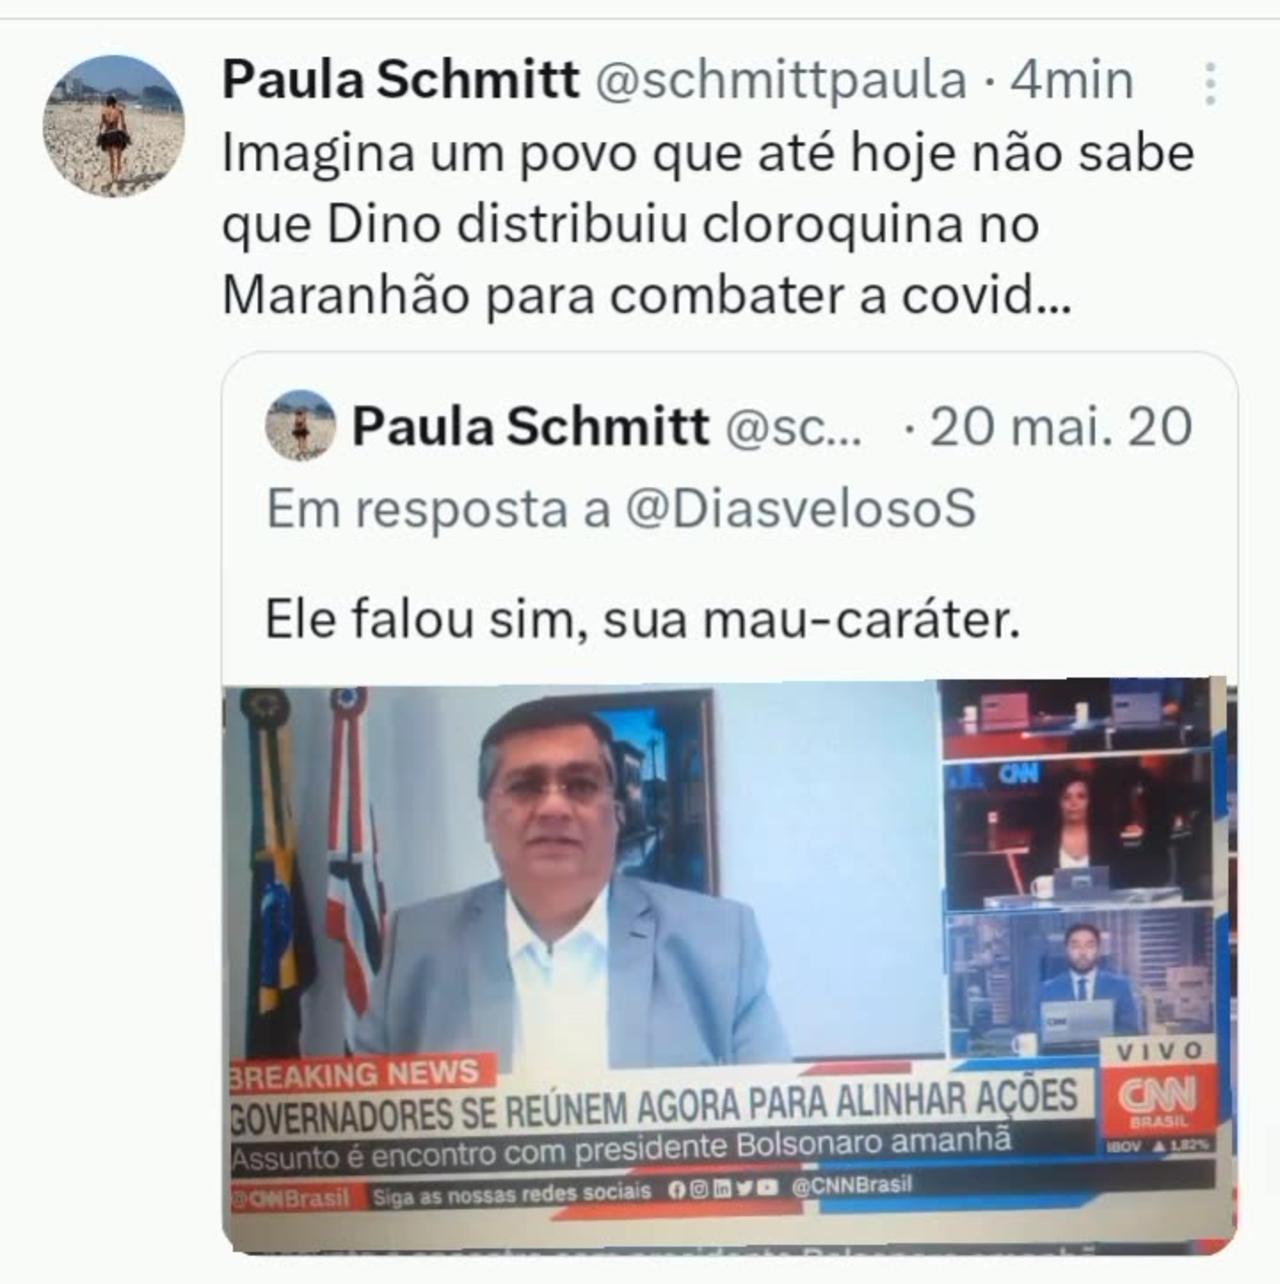 Imagina um povo que até hoje não sabe que Dino distribuiu cloroquina no Maranhão para combater a covid...